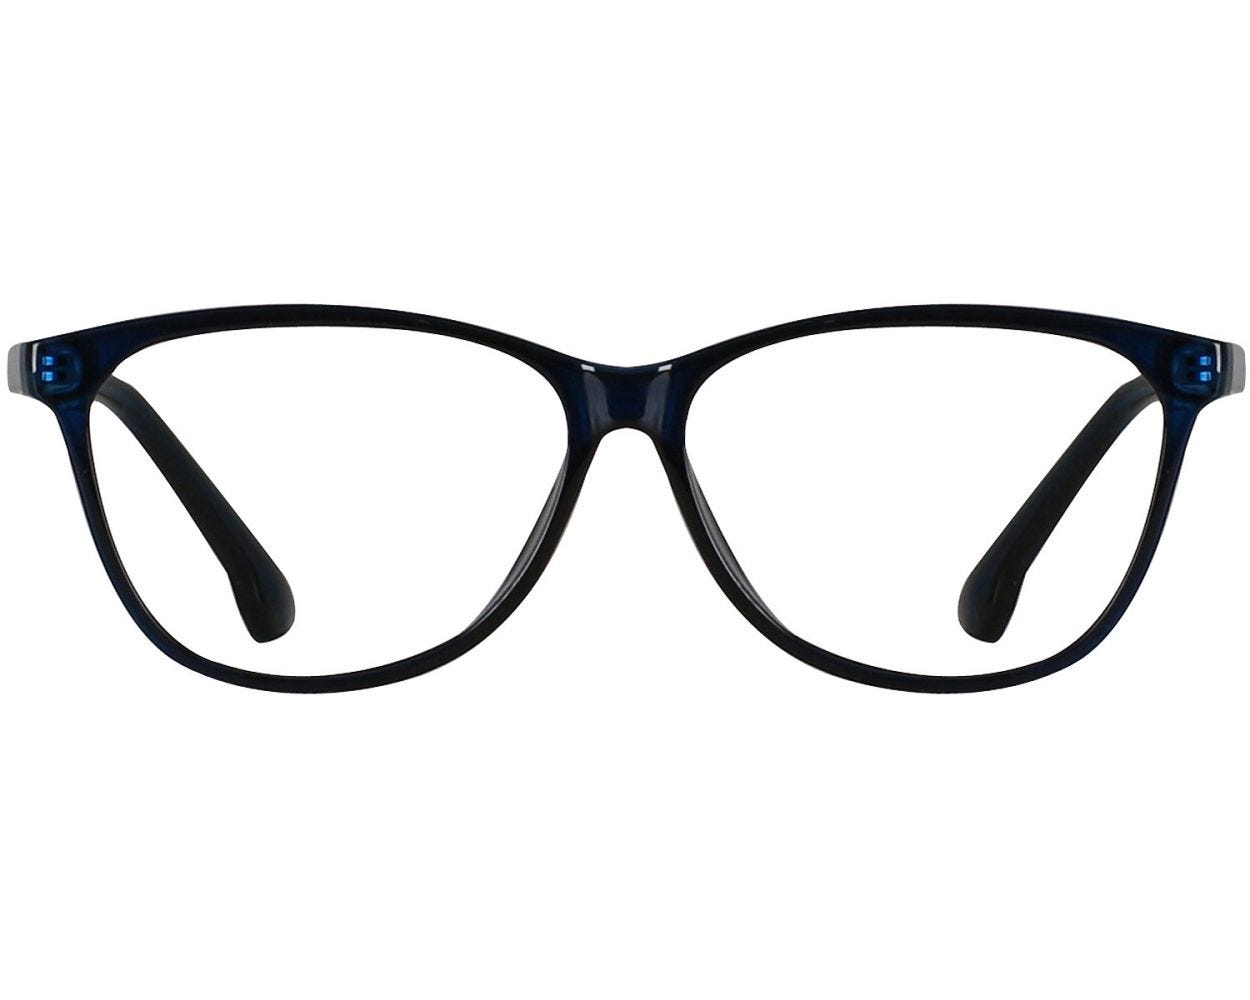 cateye glasses frames for women